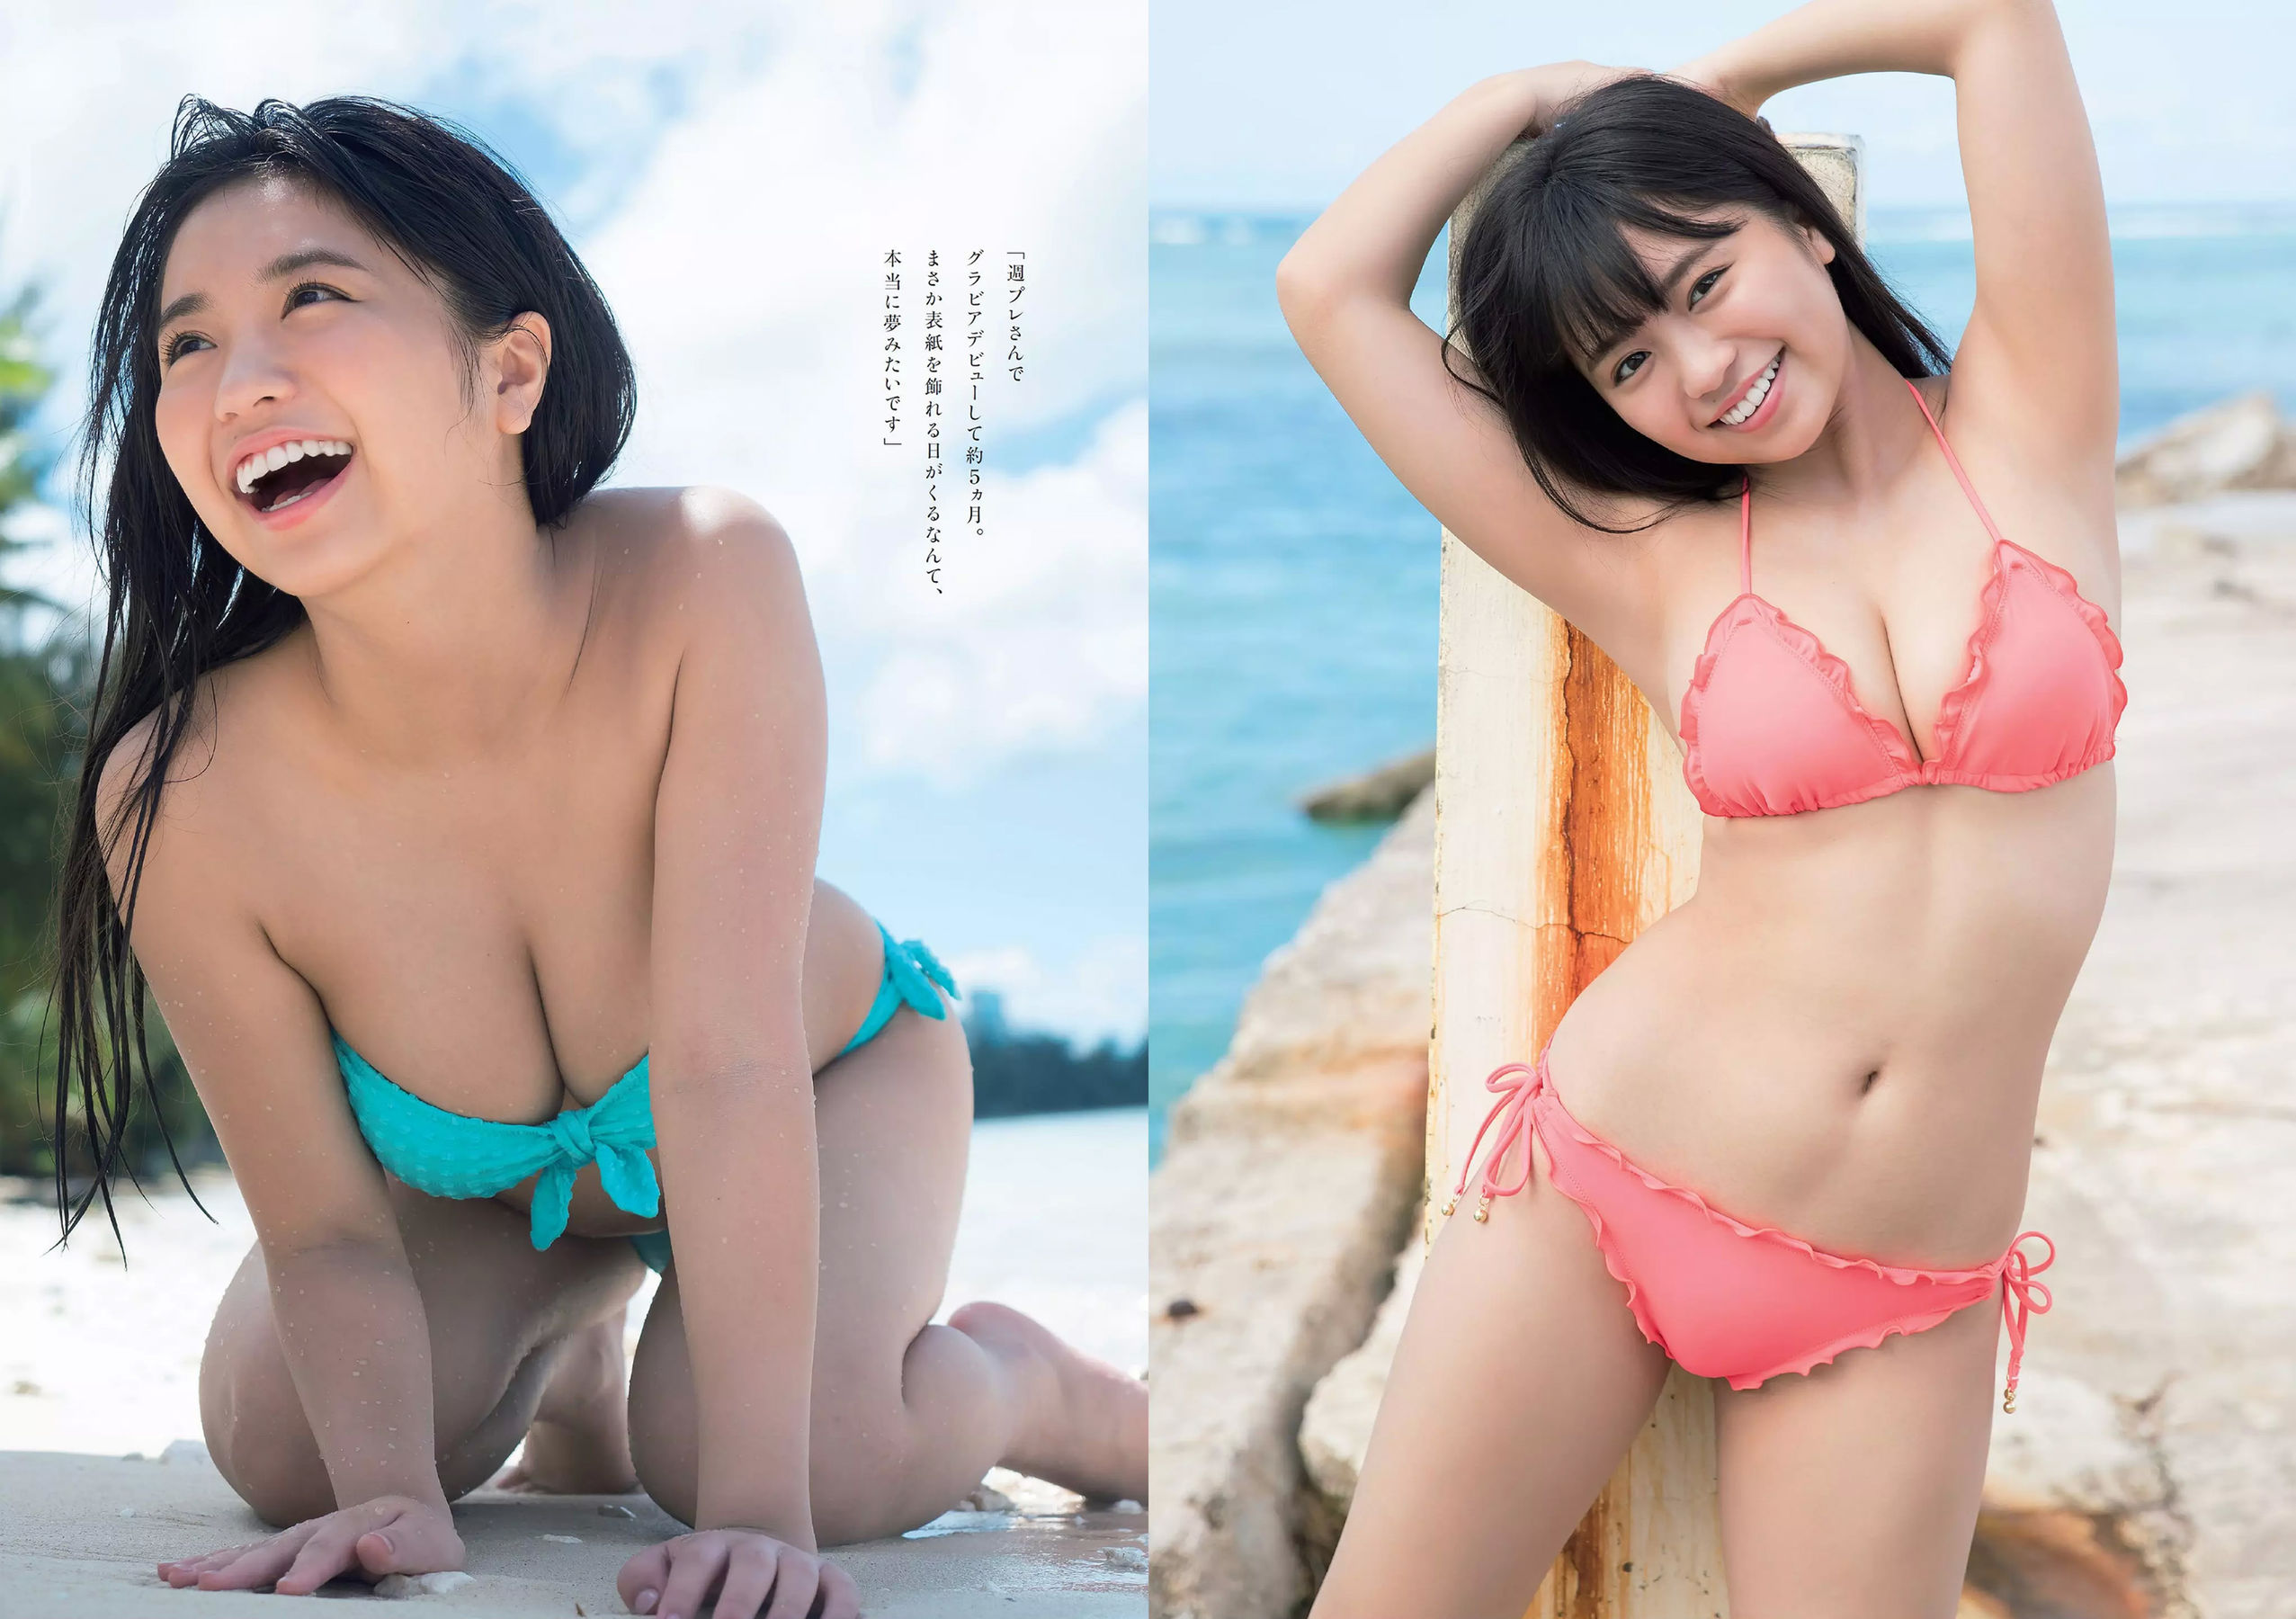 Yuno Ohara Miona Hori Nana Kato Miki Sato [Wöchentlicher Playboy] 2017 Nr. 49 Foto Mori Seite 14 No.02aaea